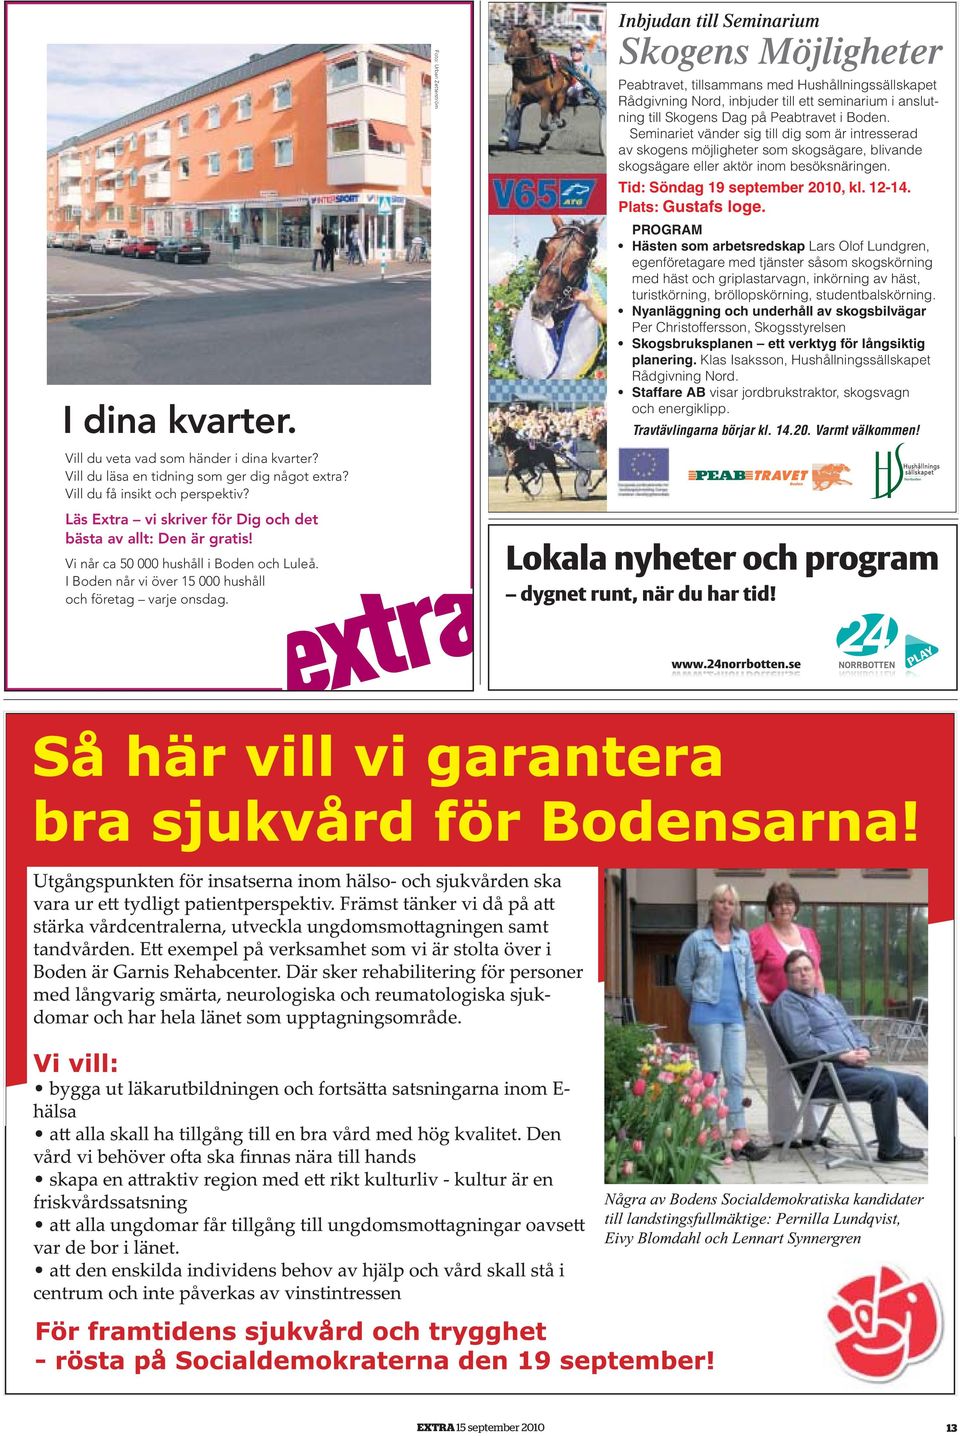 Vi når ca 50 000 hushåll i Boden och Luleå. I Boden når vi över 15 000 hushåll och företag varje onsdag.